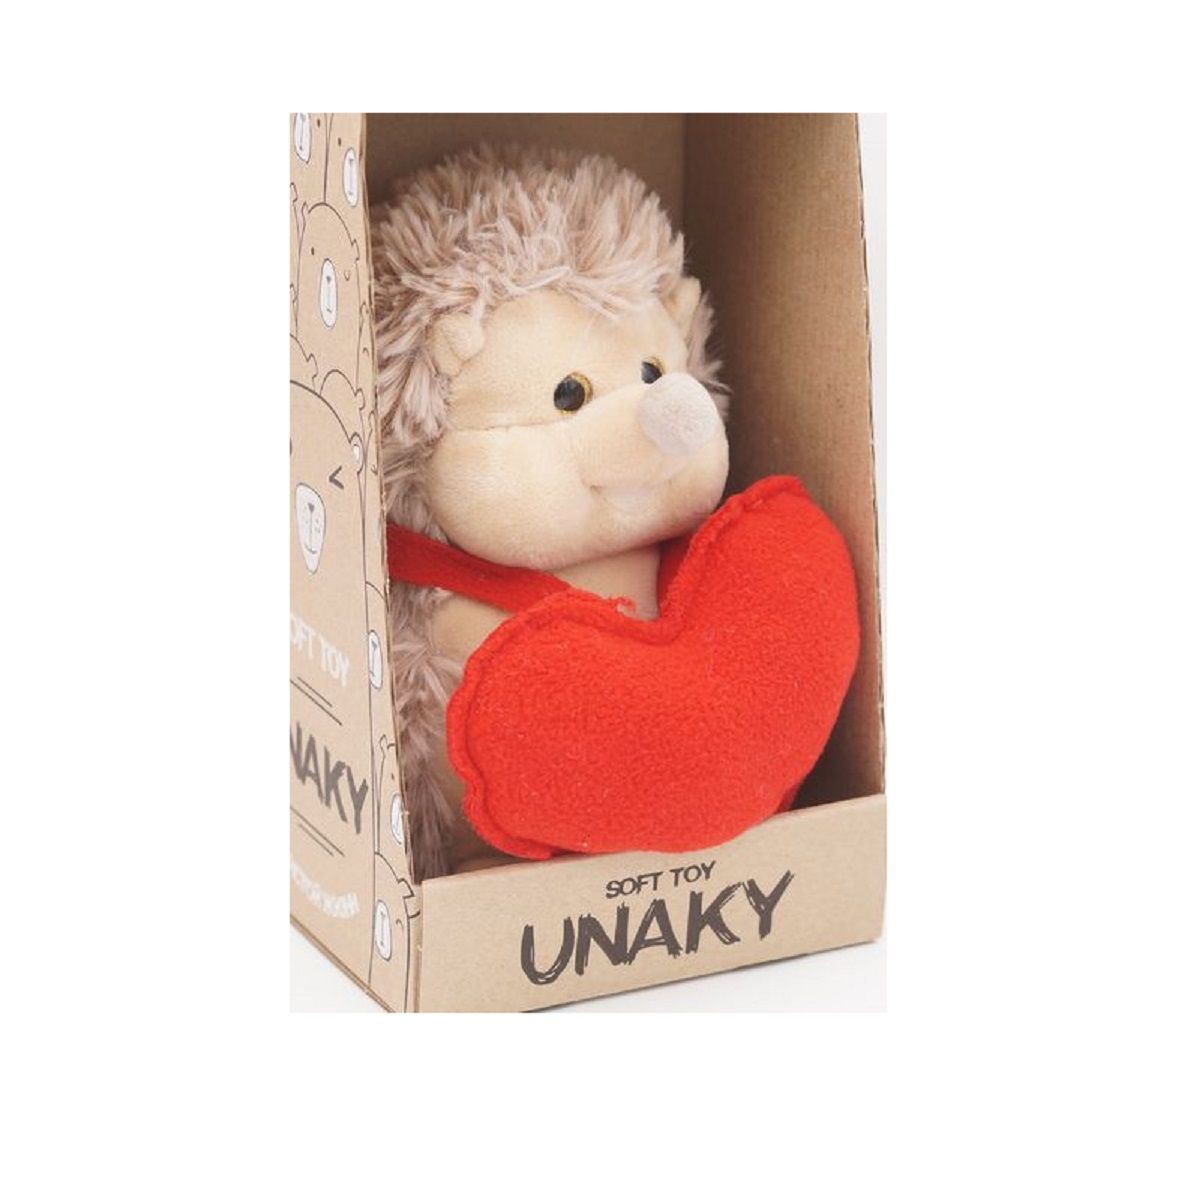 Мягкая игрушка Unaky Soft Toy Ежик Златон с красным сердцем 17 см красный; бежевый мягкая игрушка unaky soft toy ежик златон 22 см